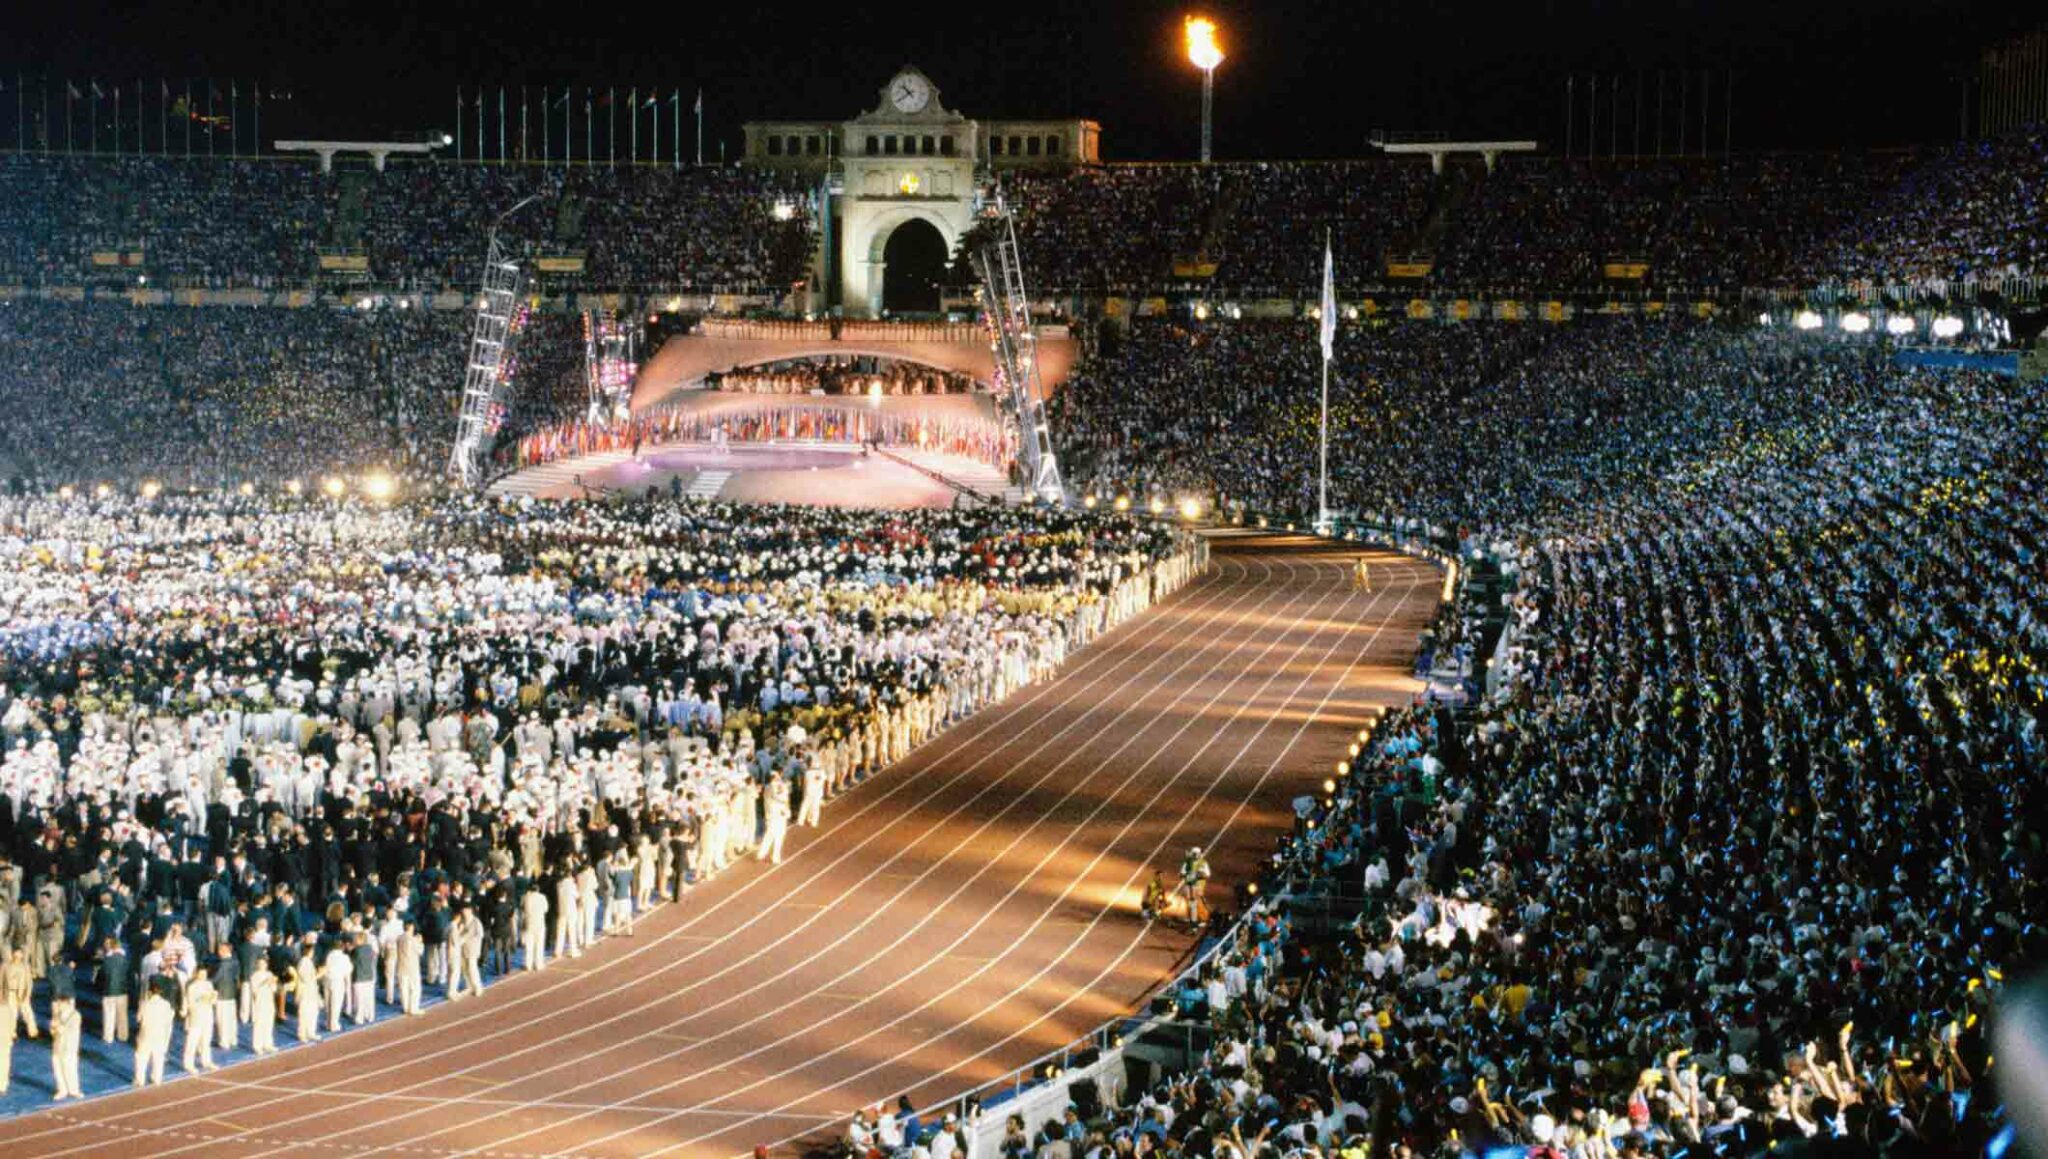 9 août 1992, Barcelone fête la clôture de ses Jeux Olympiques